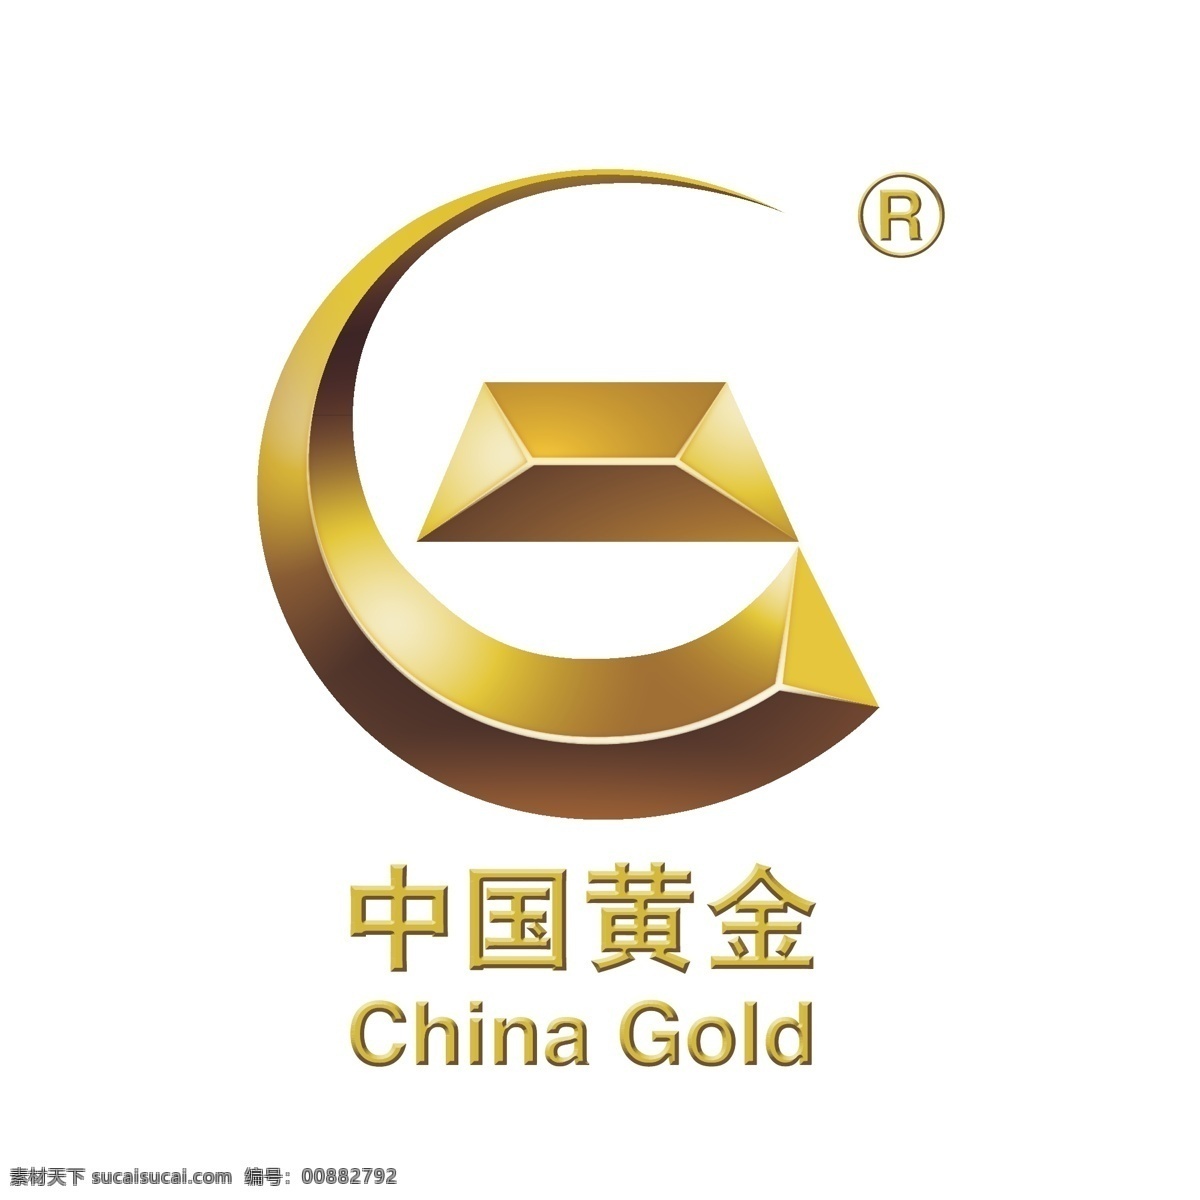 矢量高清 中国 黄金 logo china gold 标准 logo设计